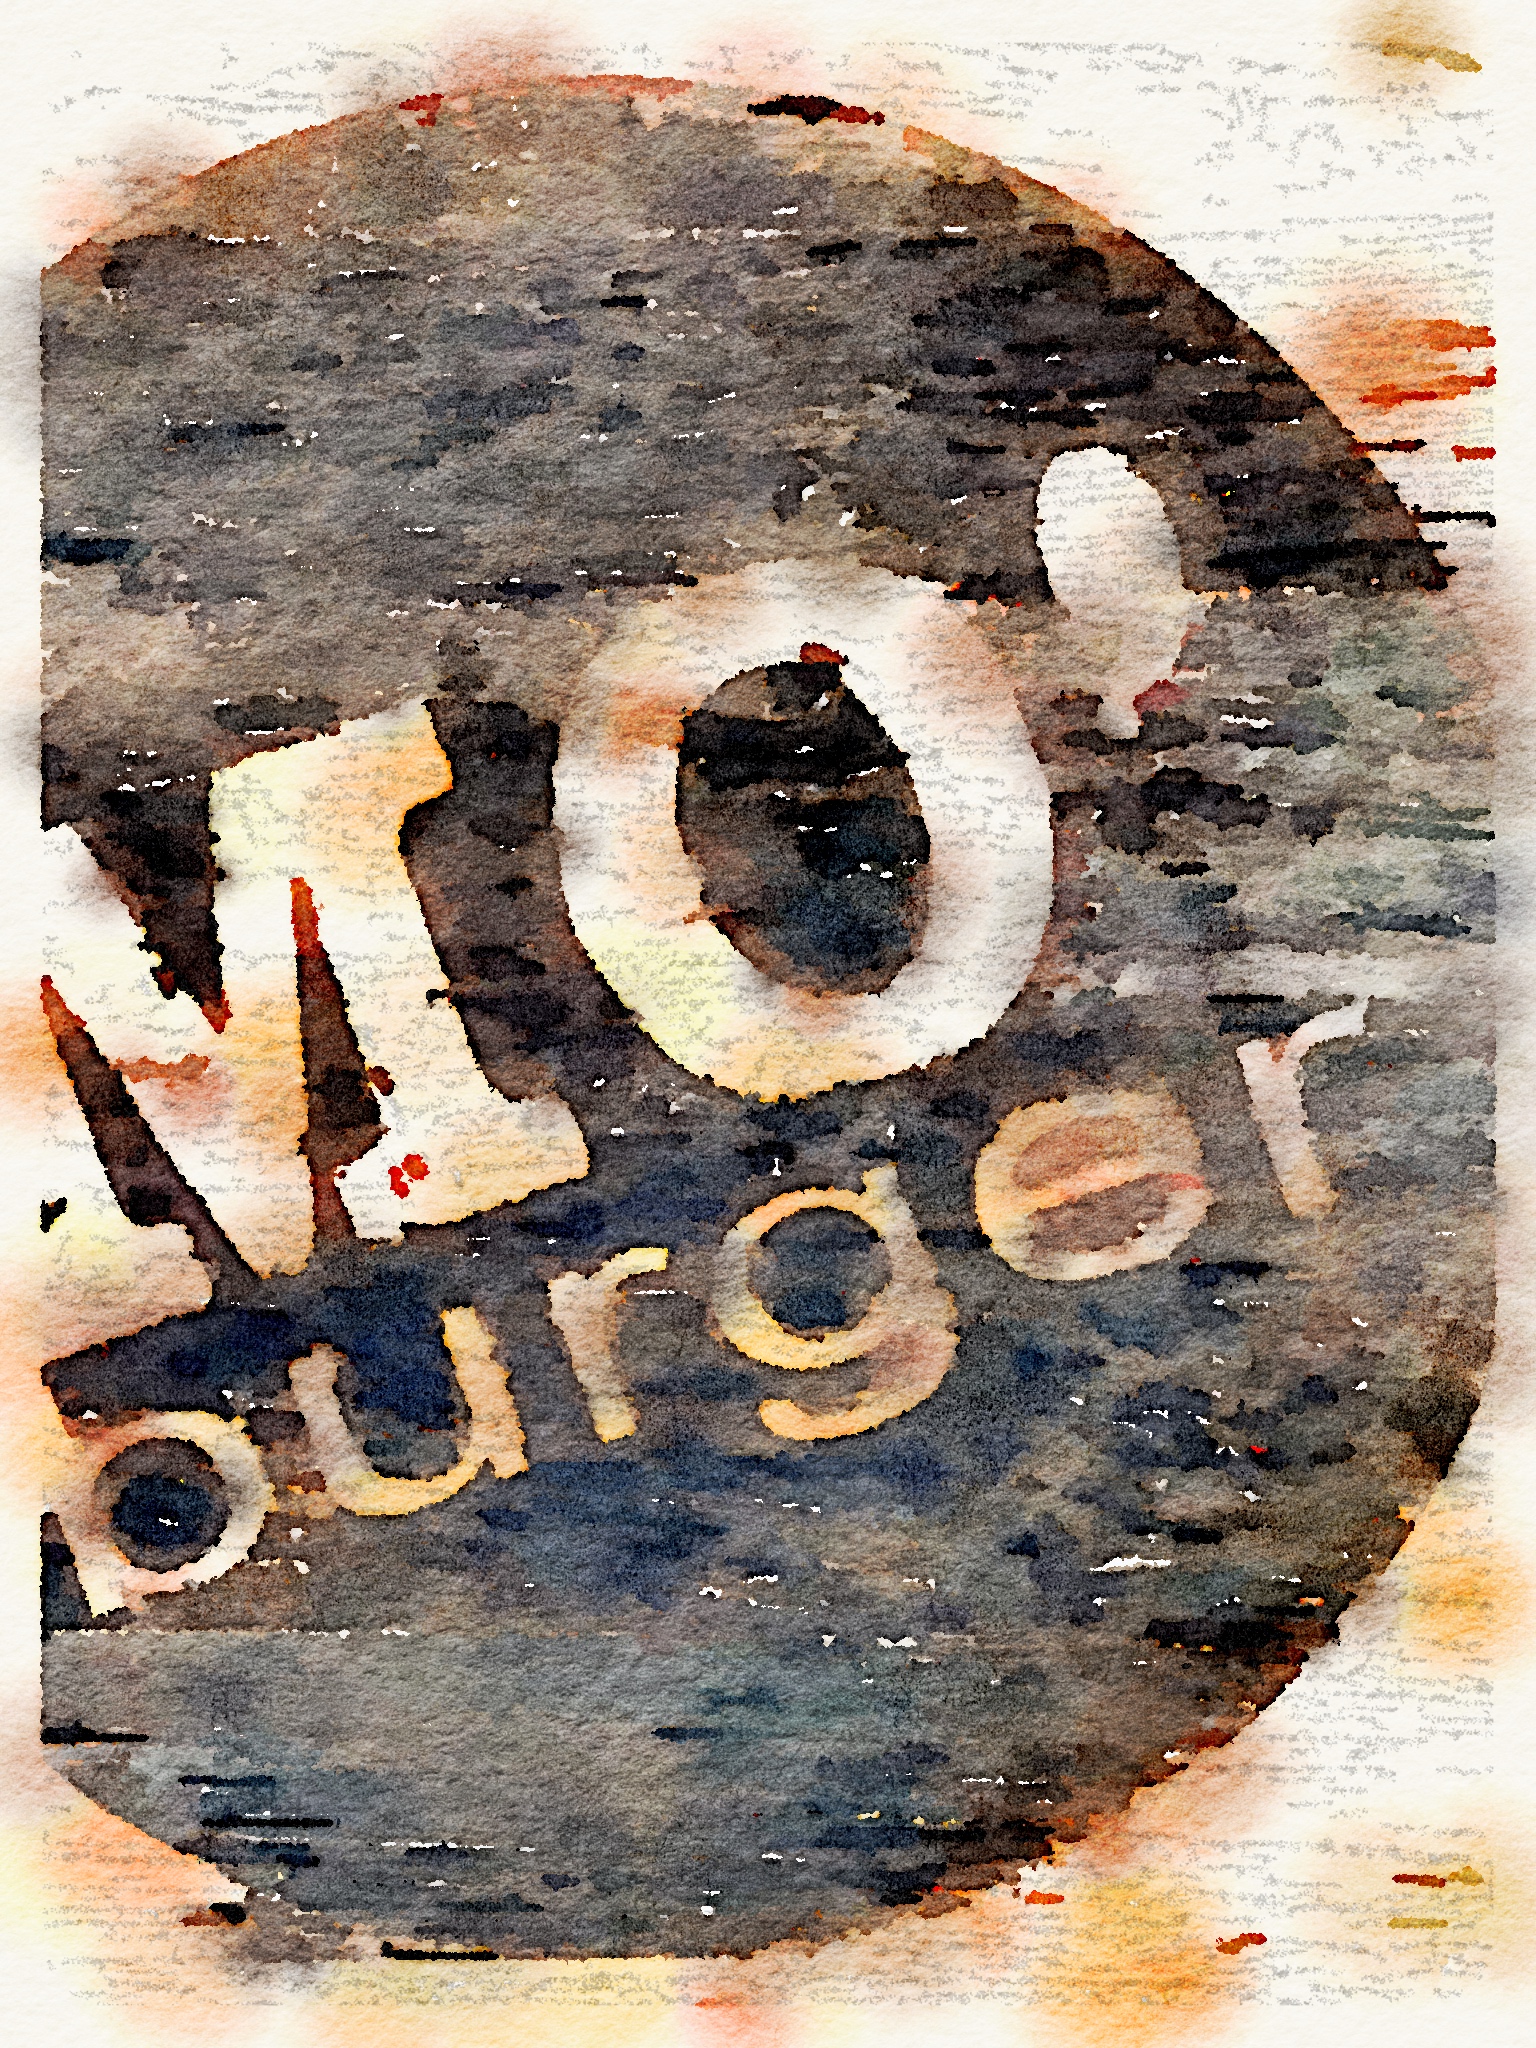 mo’s burger